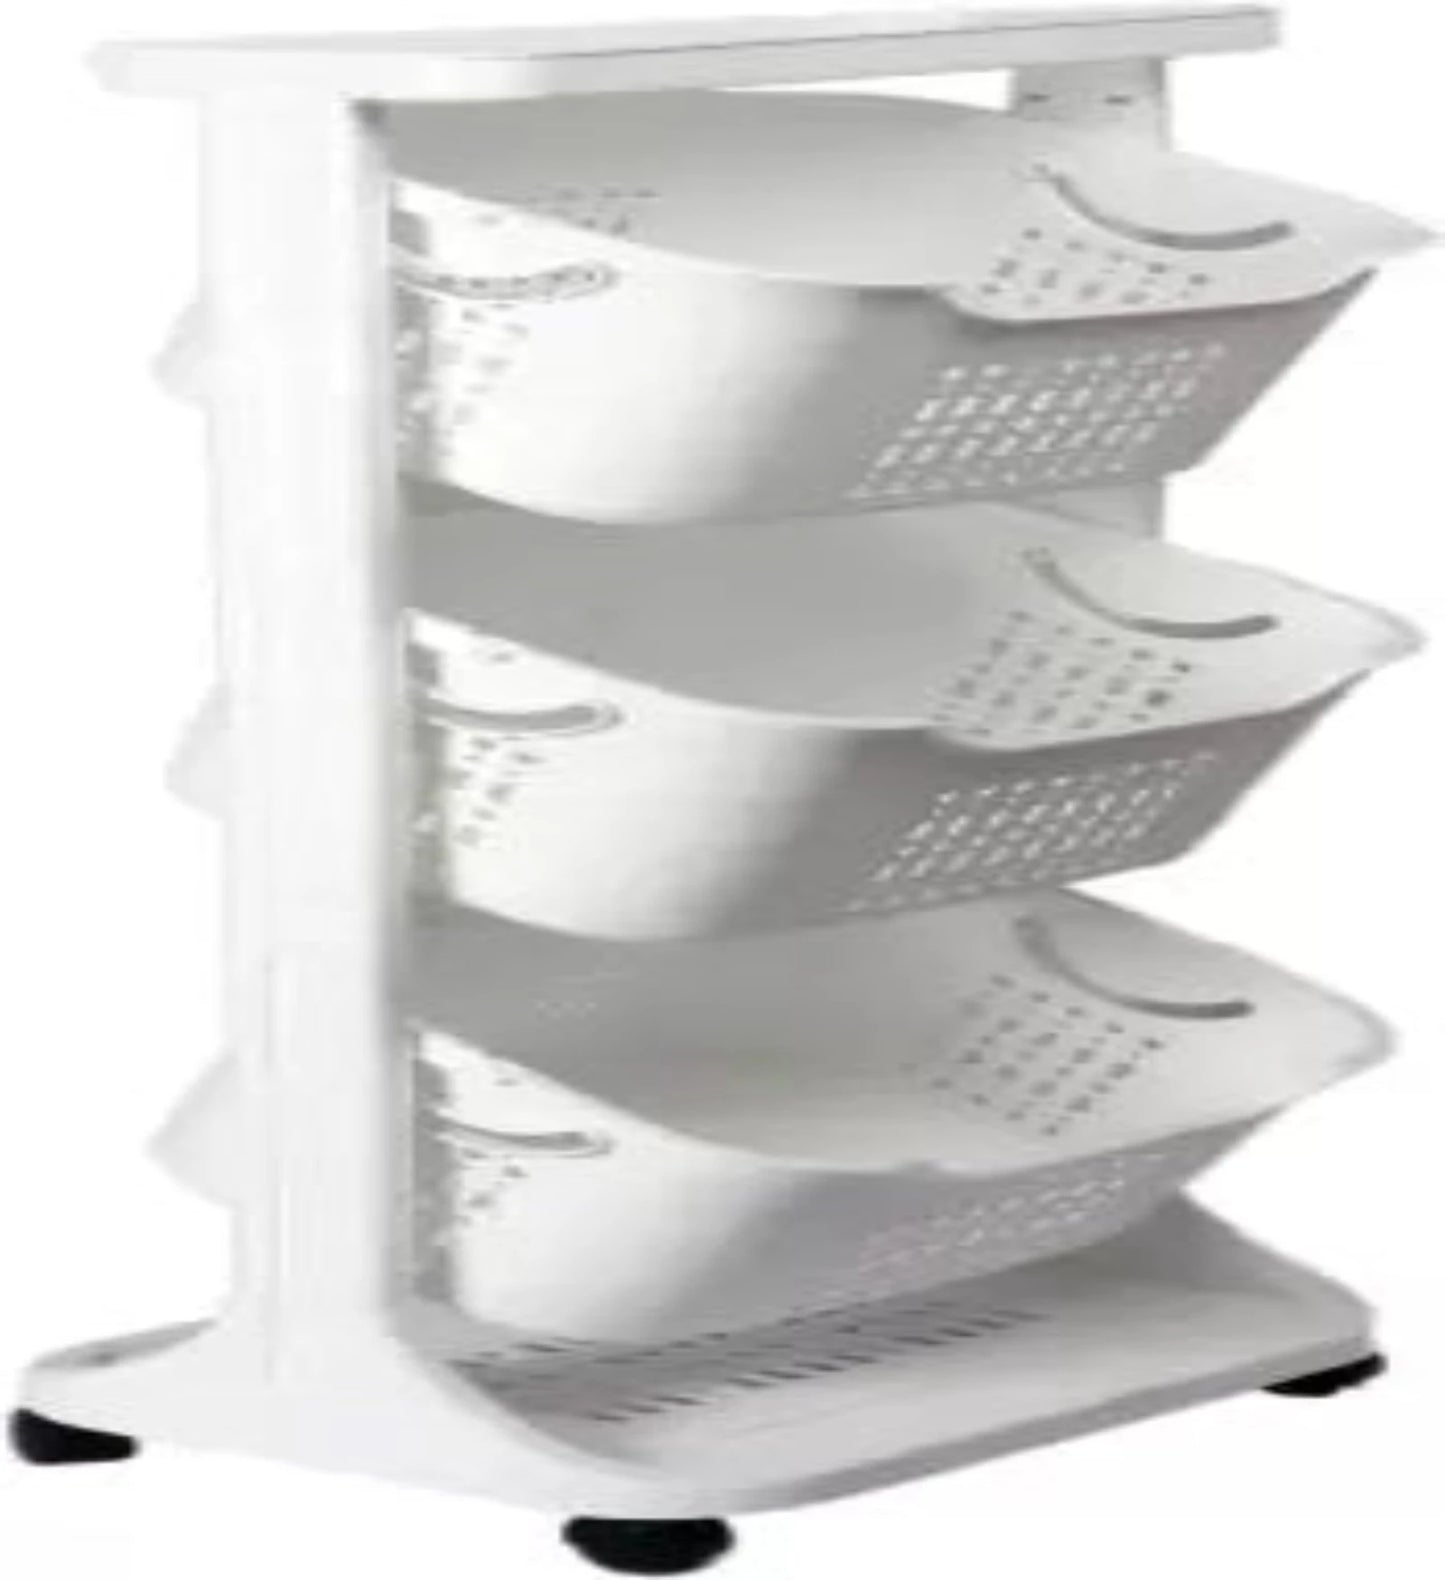 Plastic Wall Shelf  (Number of Shelves - 3, White)